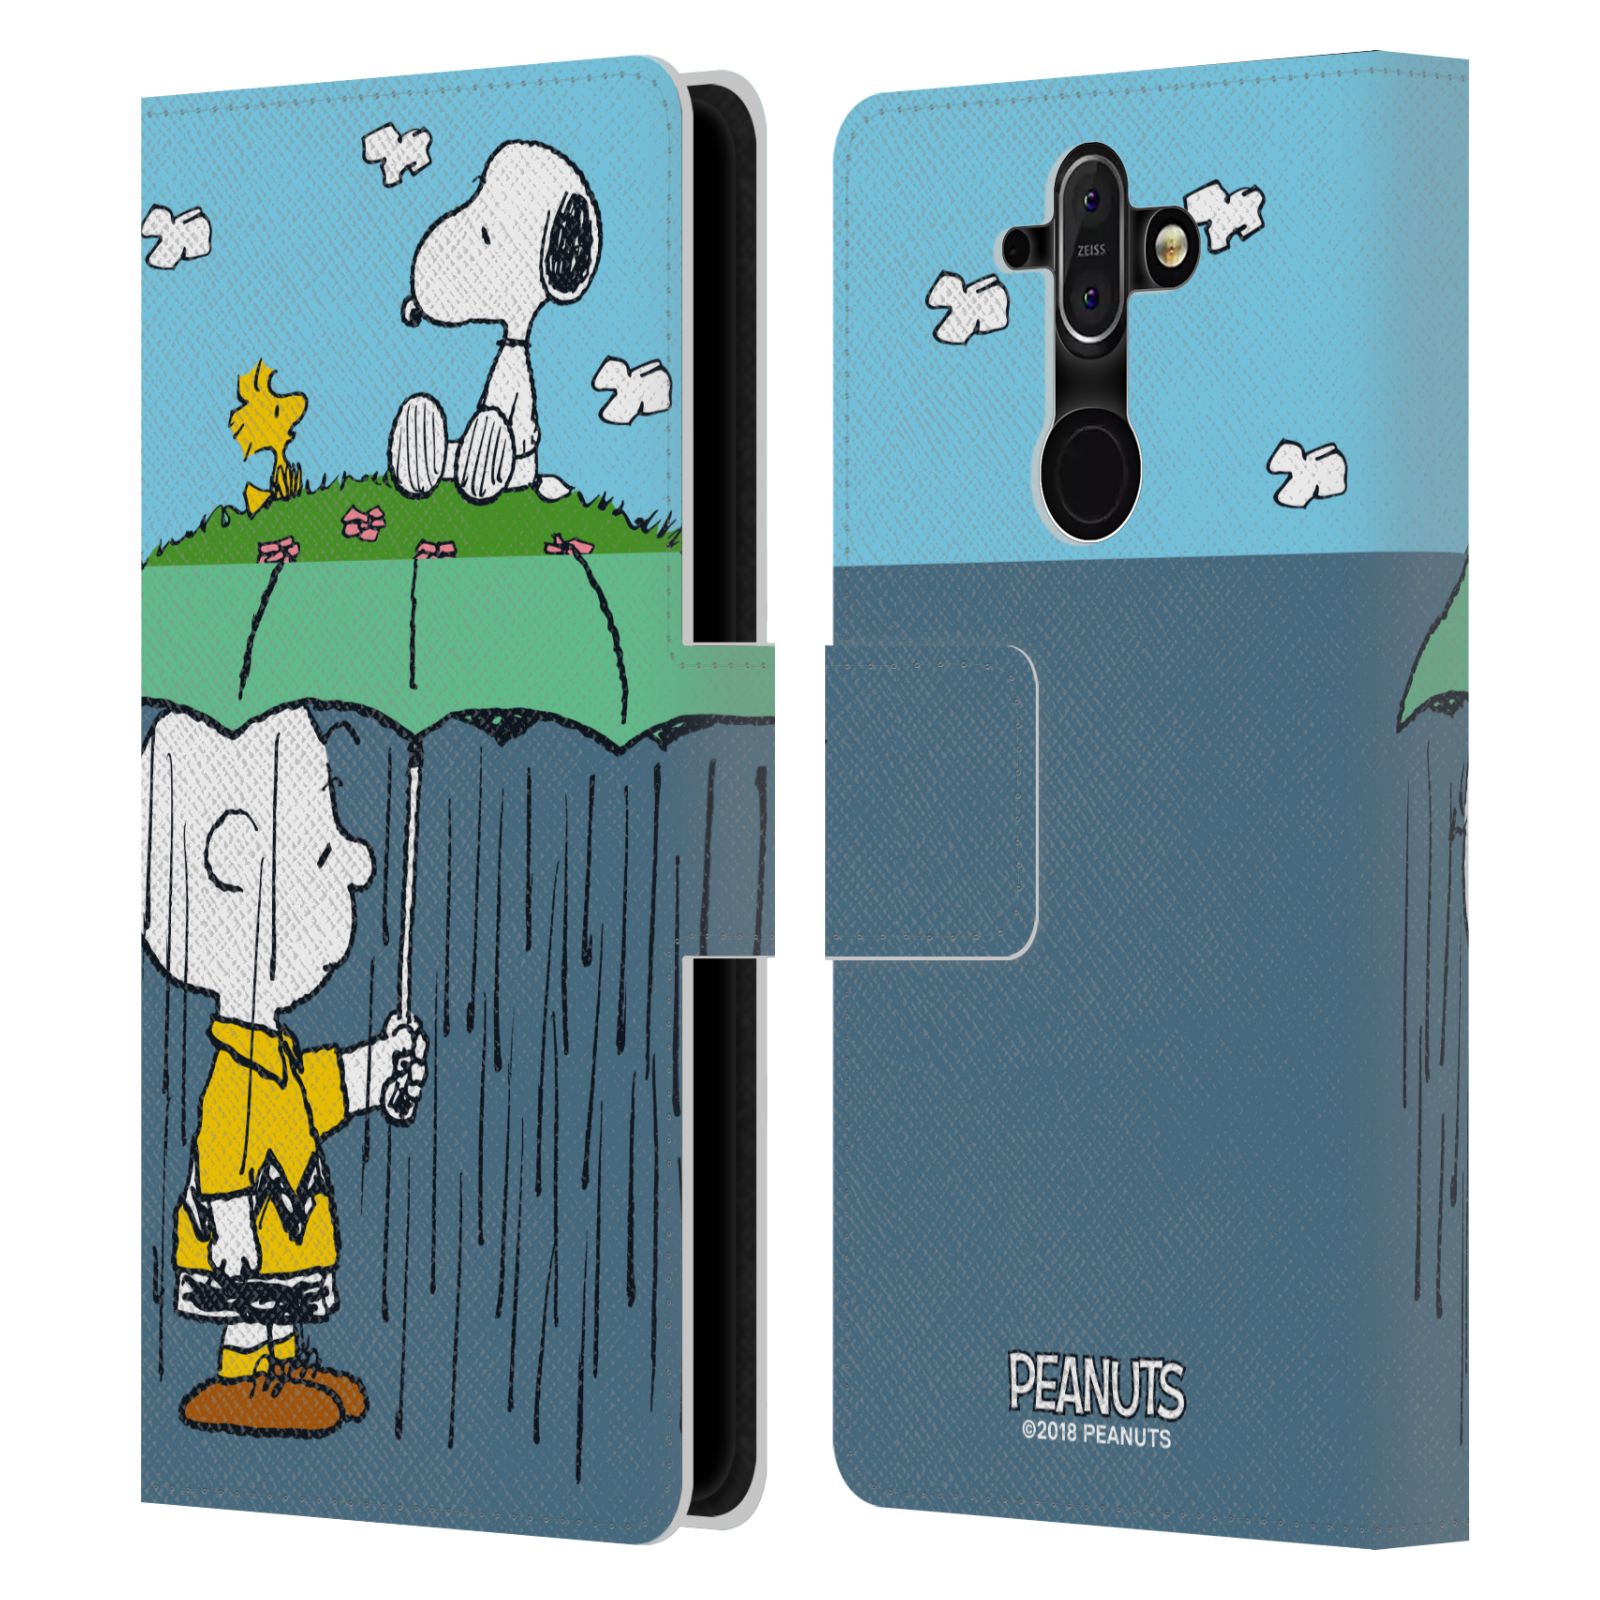 Pouzdro na mobil Nokia 8 Sirocco - Head Case - Peanuts - Snoopy, Charlie a ptáček Woodstock